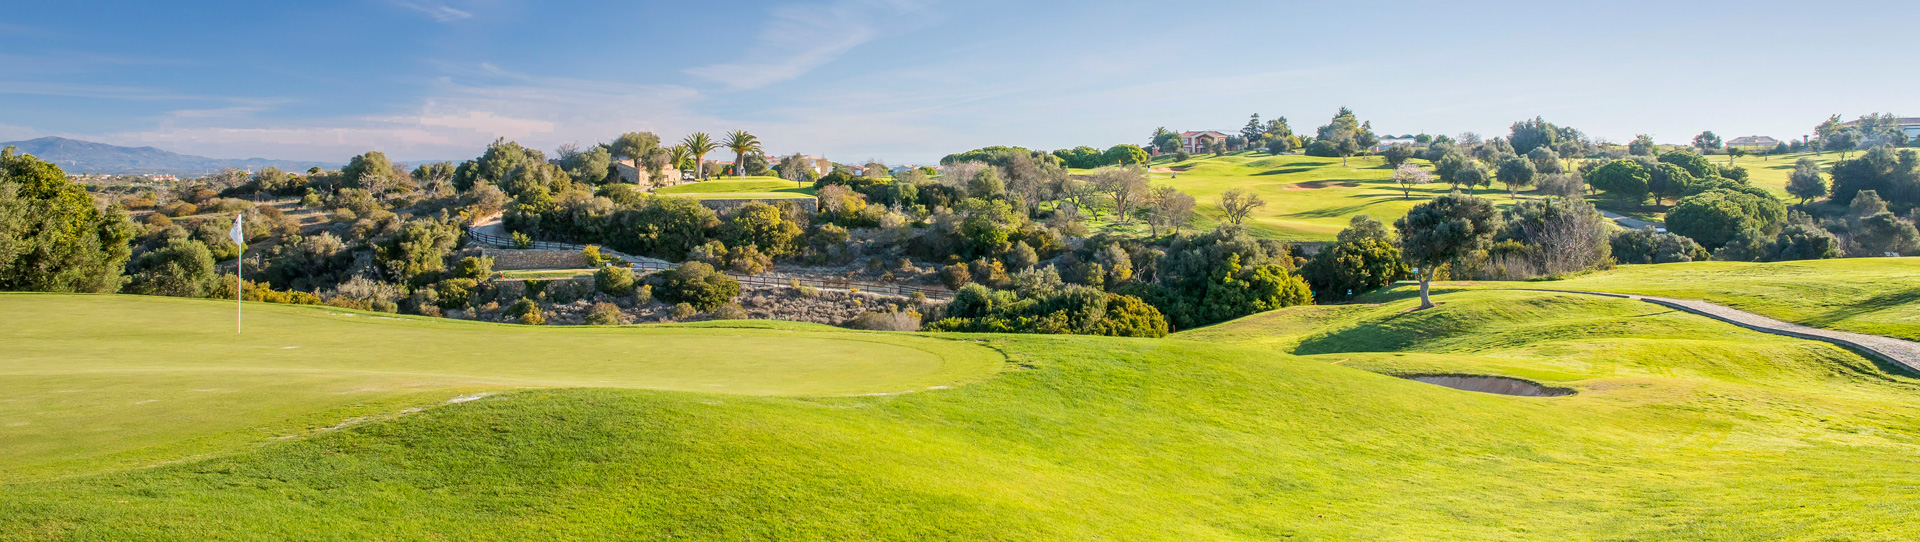 Portugal golf courses - Boavista Golf Course - Photo 1